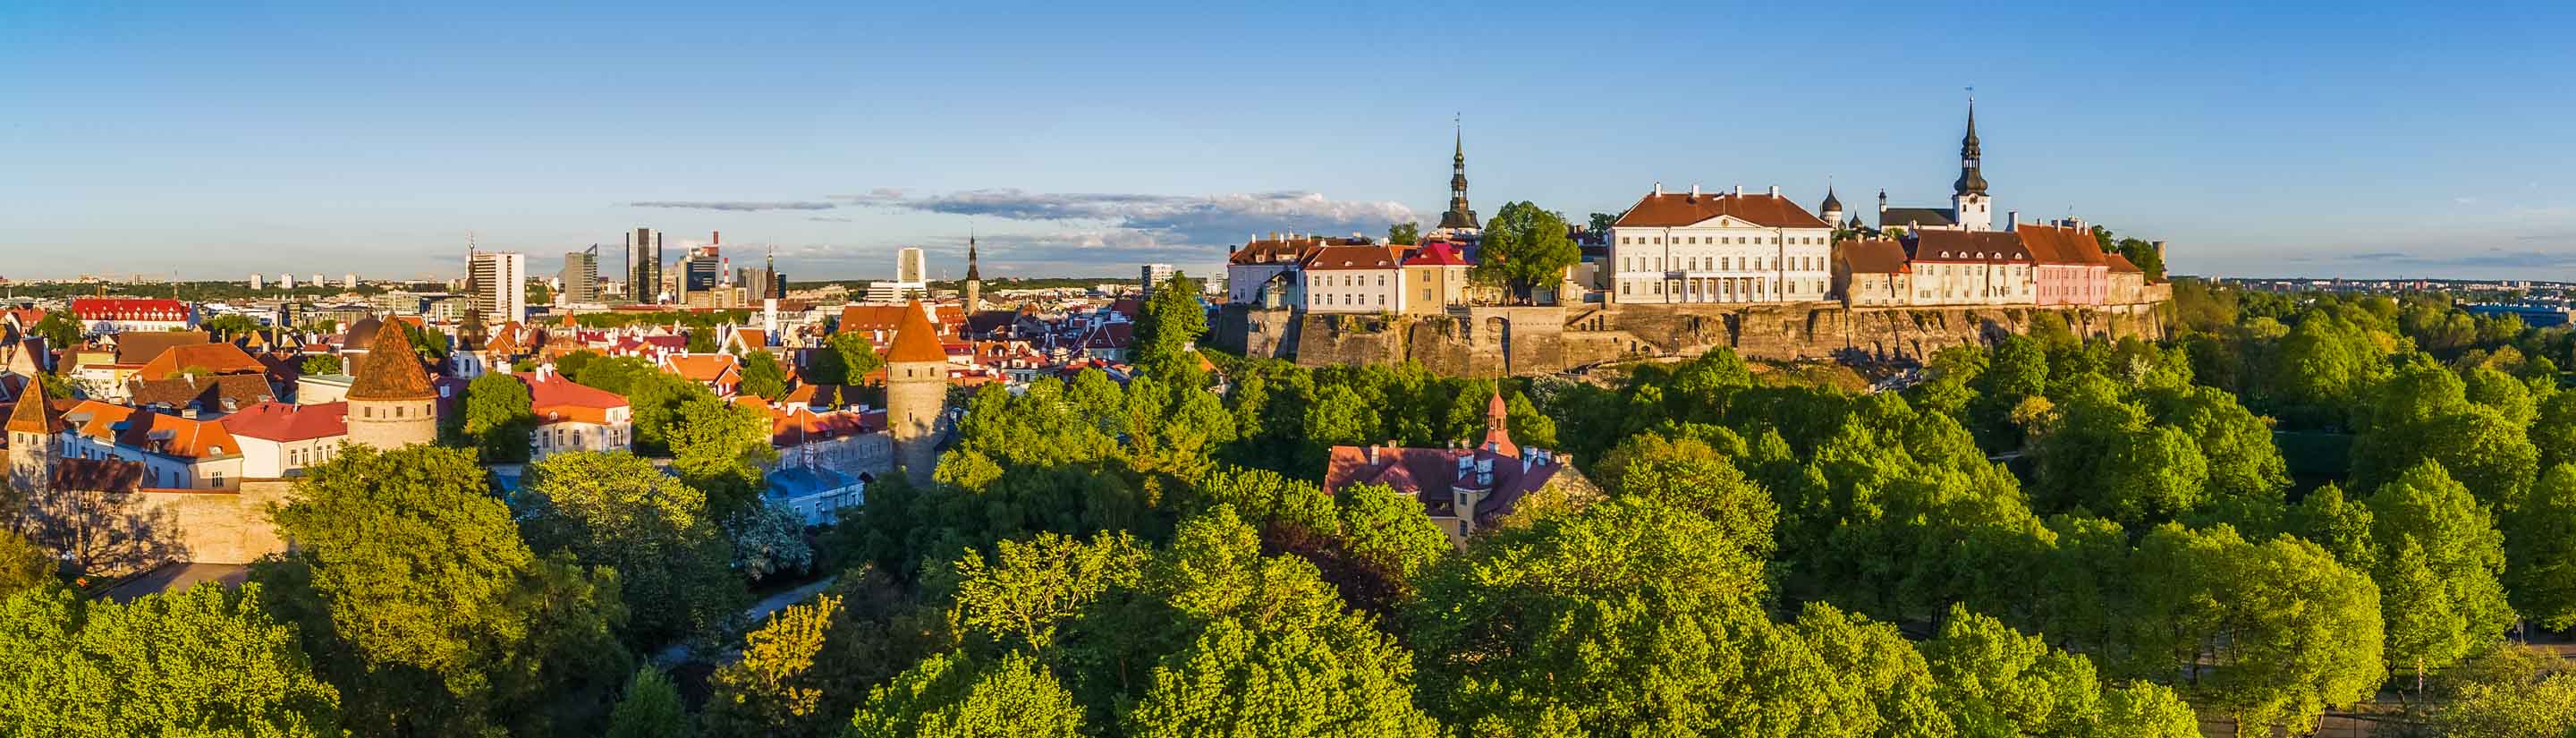 Reise ins Baltikum: Länder voller Geschichte